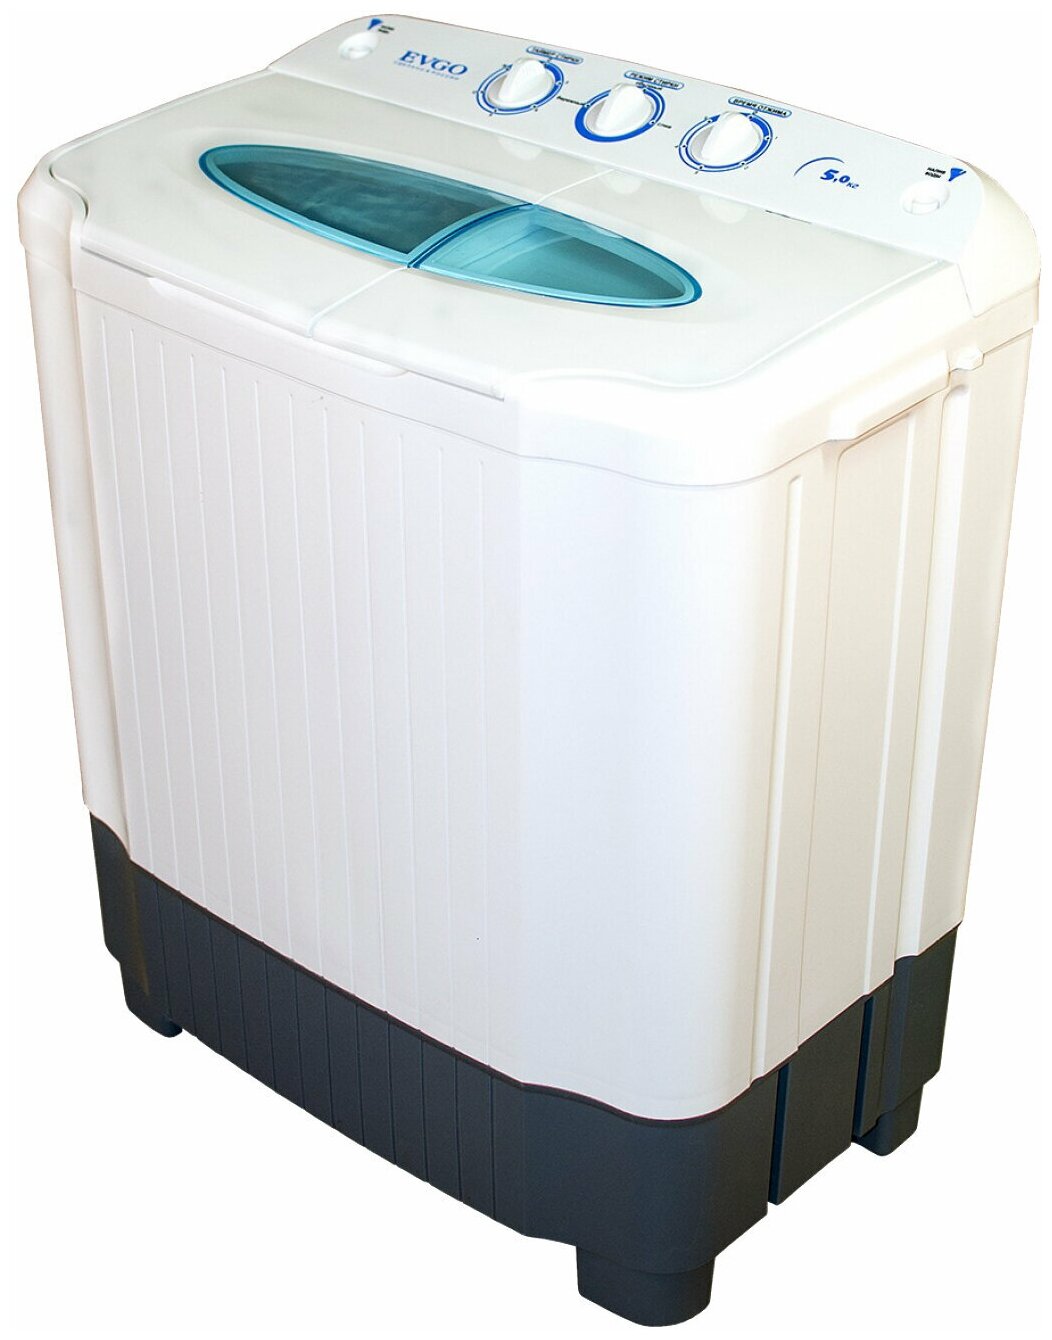 Активаторная стиральная машина Evgo WS-50PET (2016)